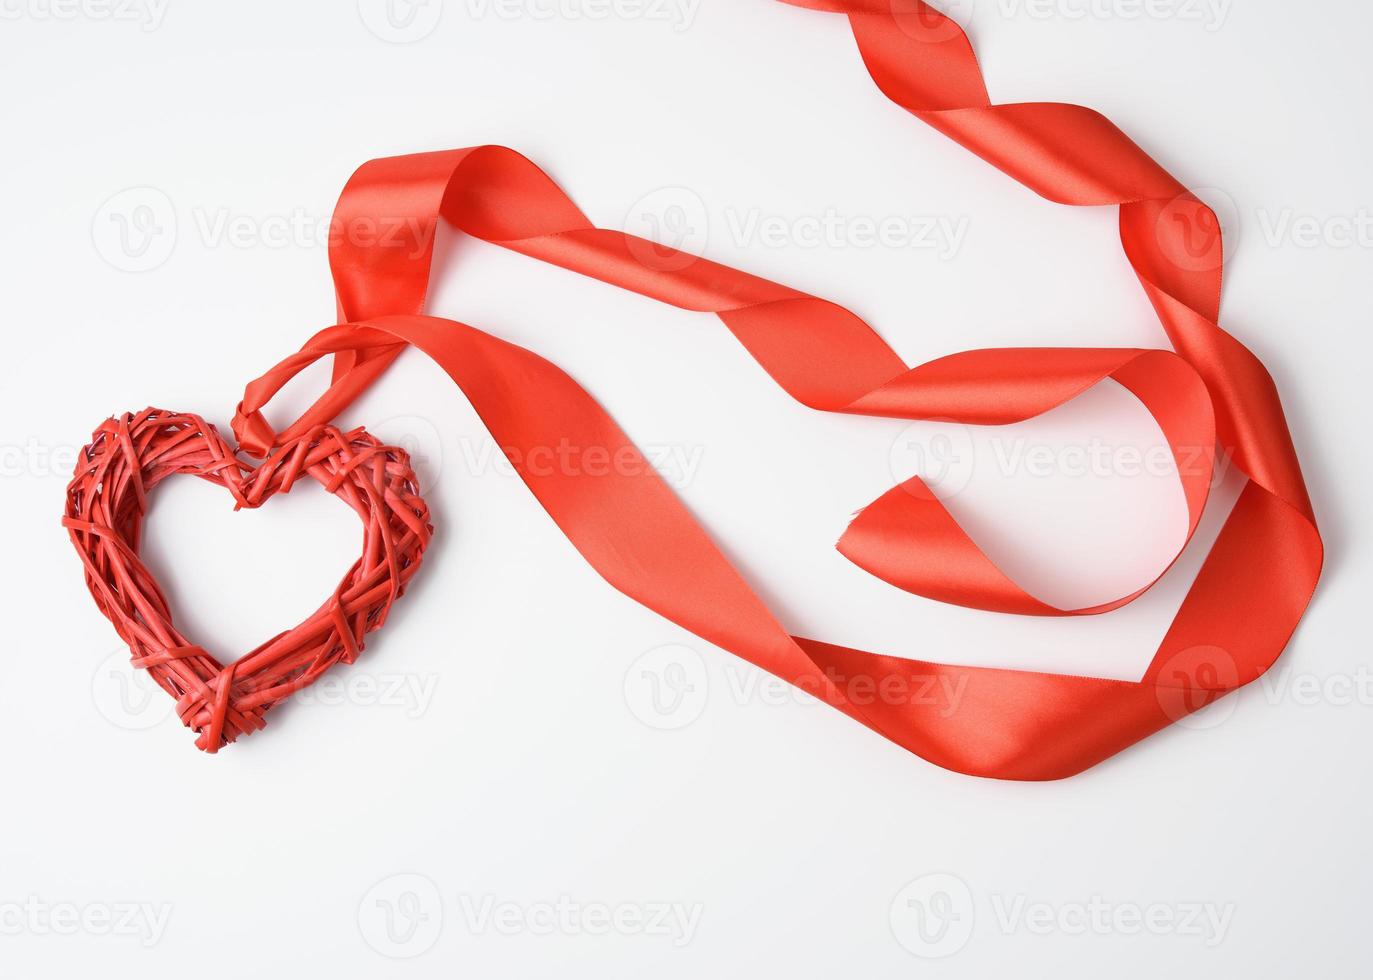 corazón trenzado rojo y cinta de seda retorcida sobre fondo blanco foto